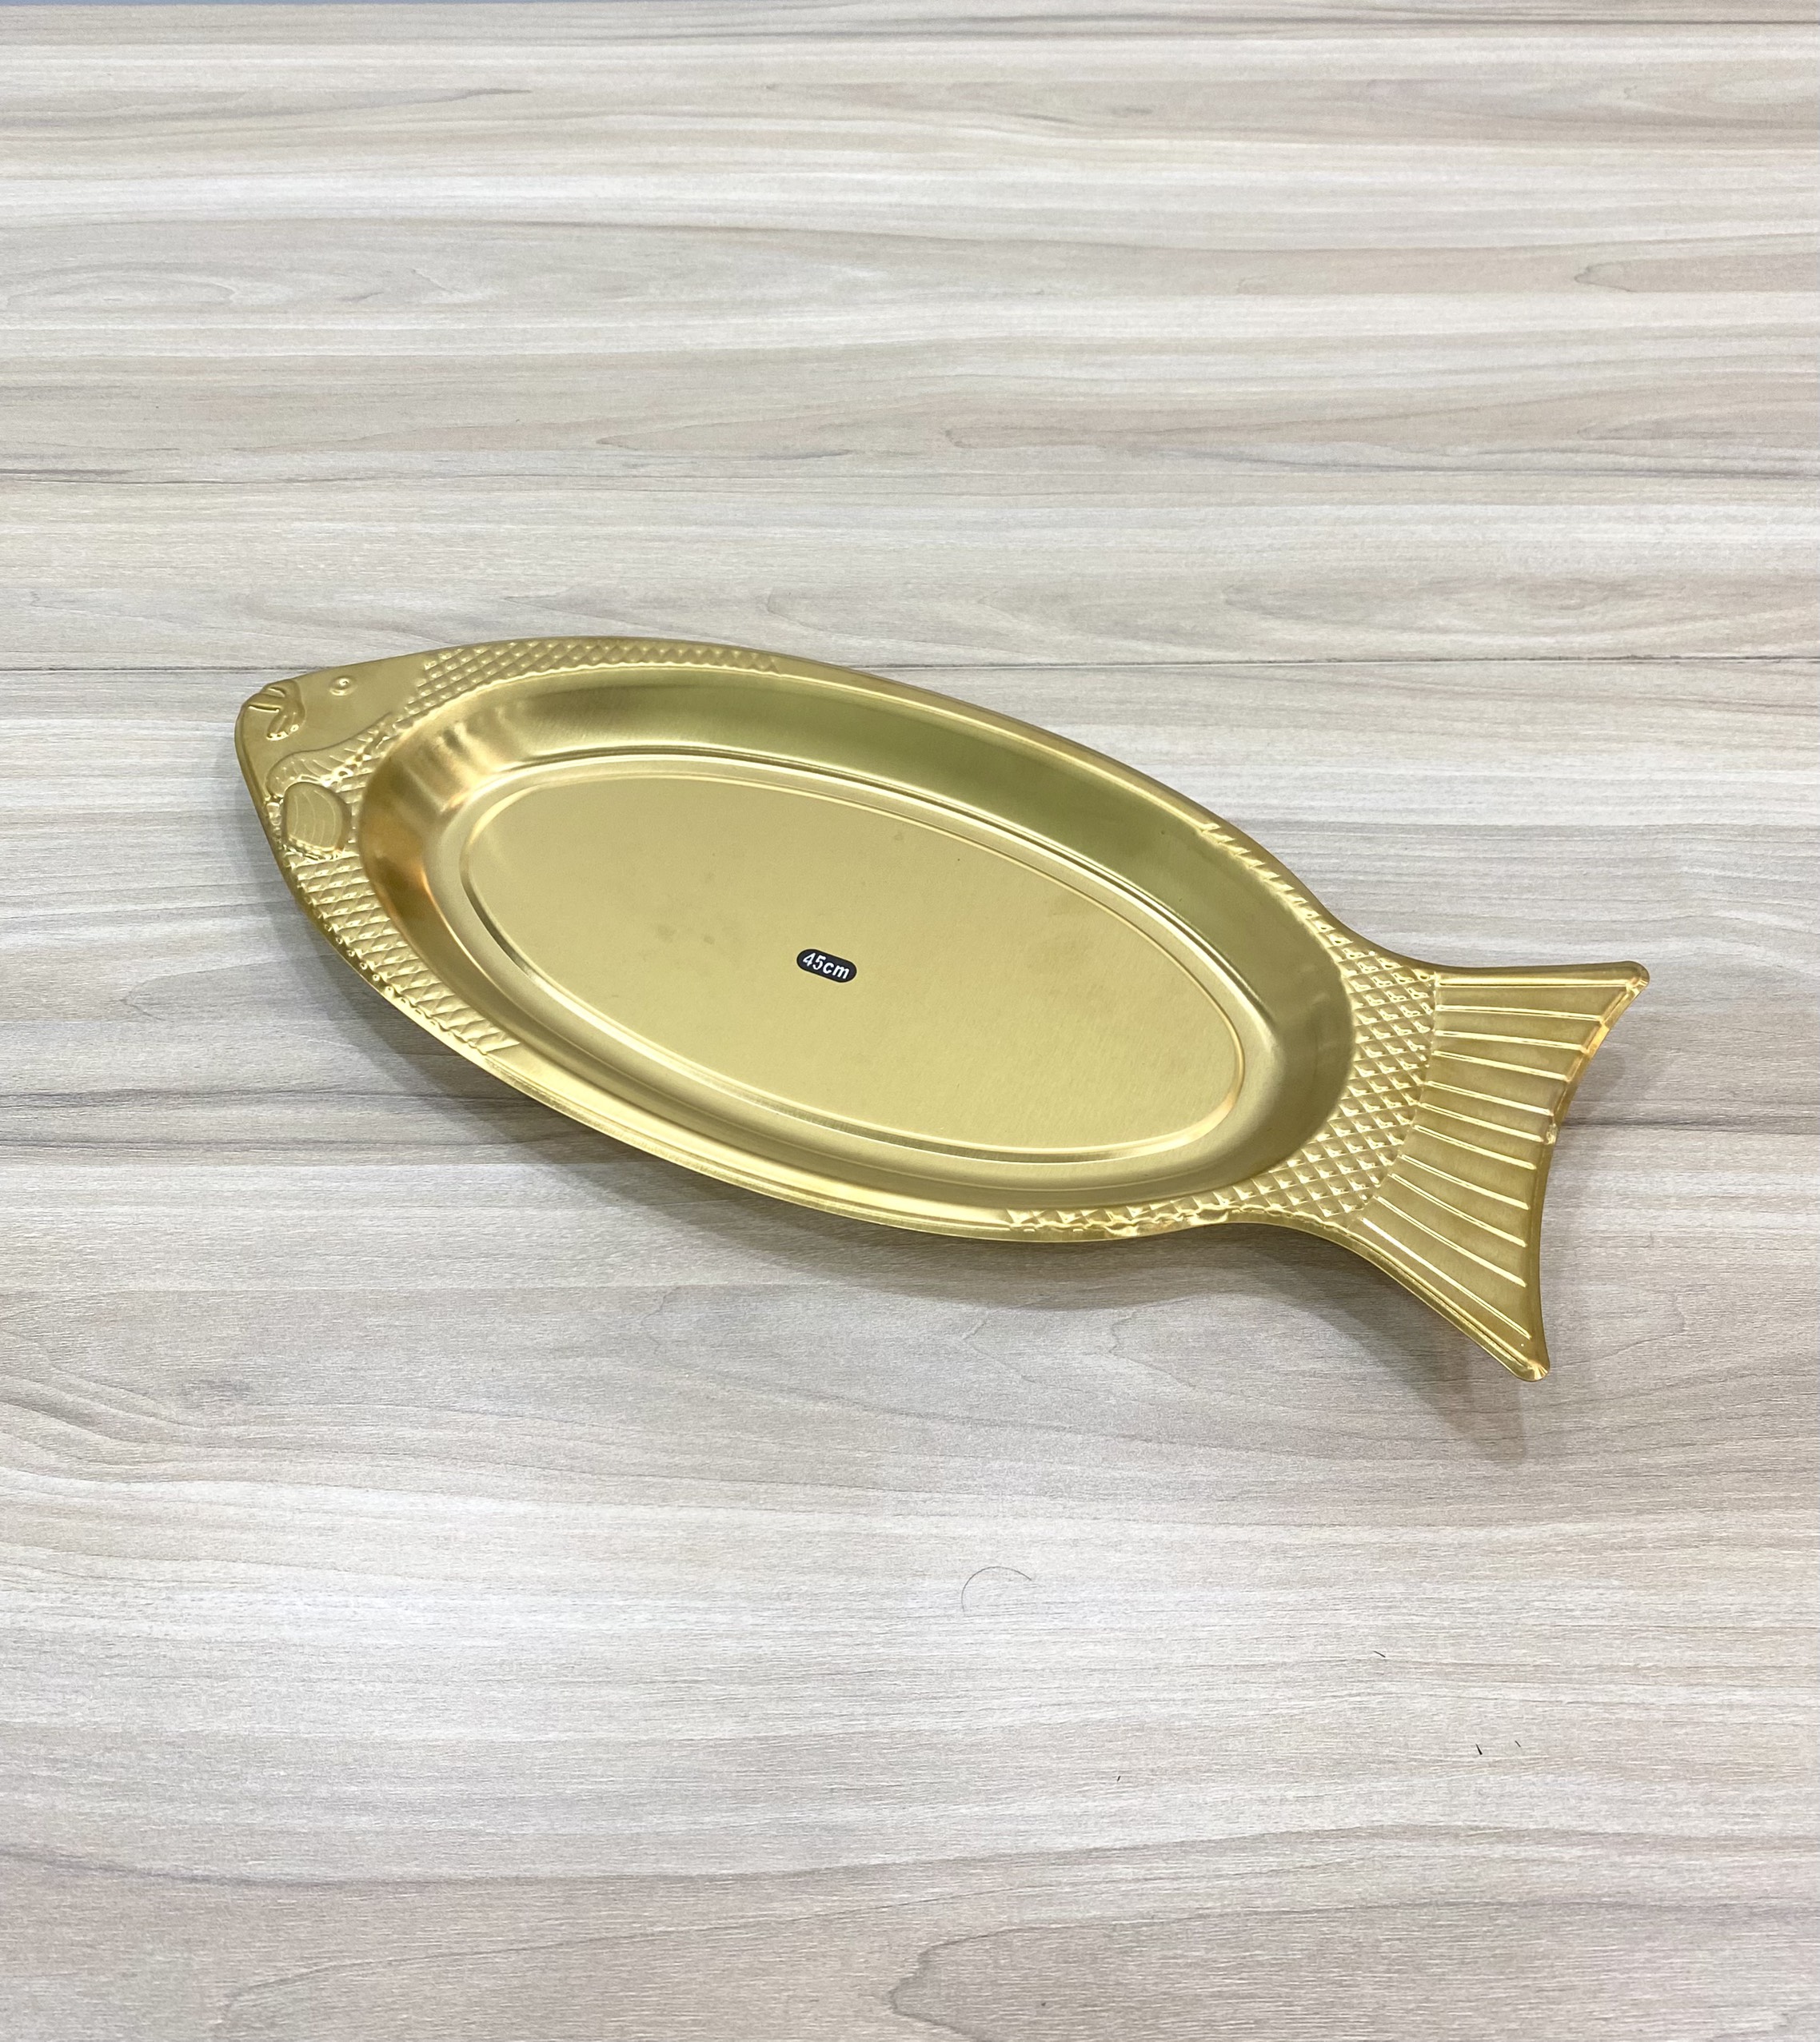 Dĩa cá inox vàng YP45G (45cm) Hàn Quốc, chính hãng SQC phân phối tại Tp HCM 